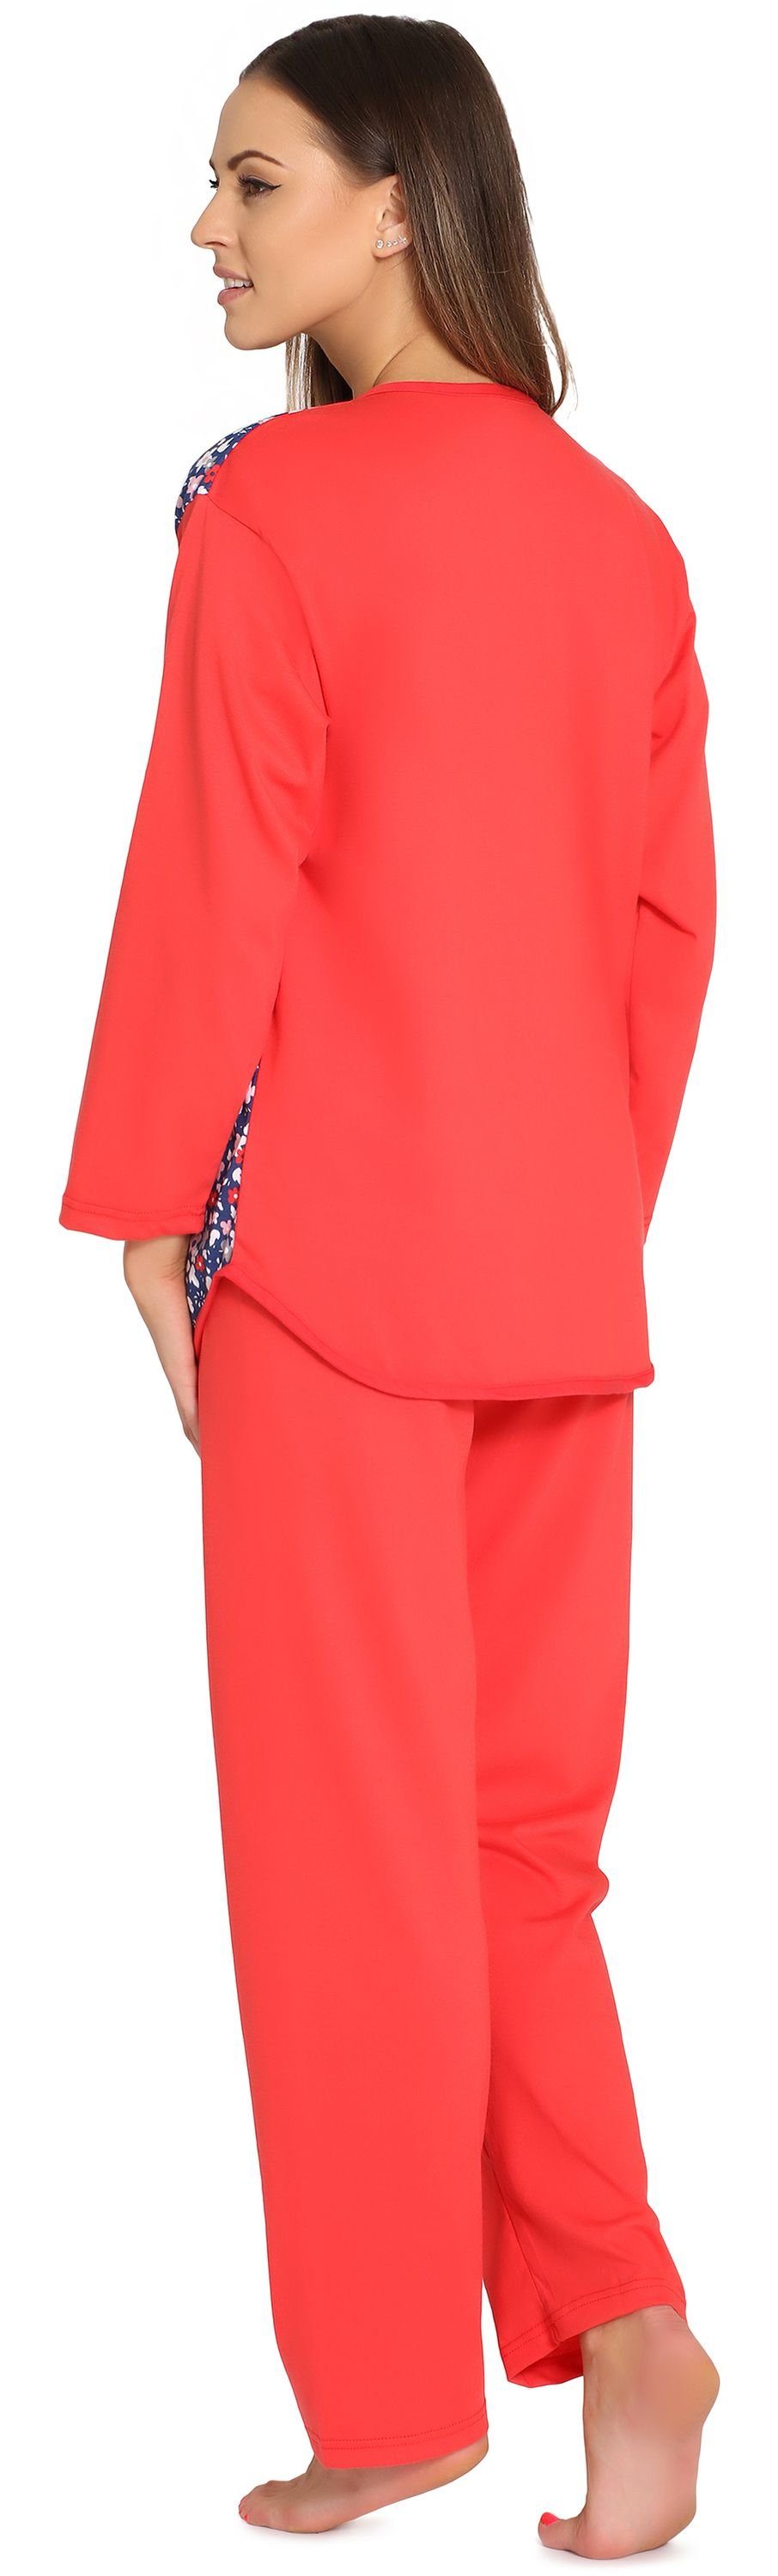 Merry Style Schlafanzug Damen Knopfleiste Coral/Blumen Schlafanzug MSDR5006